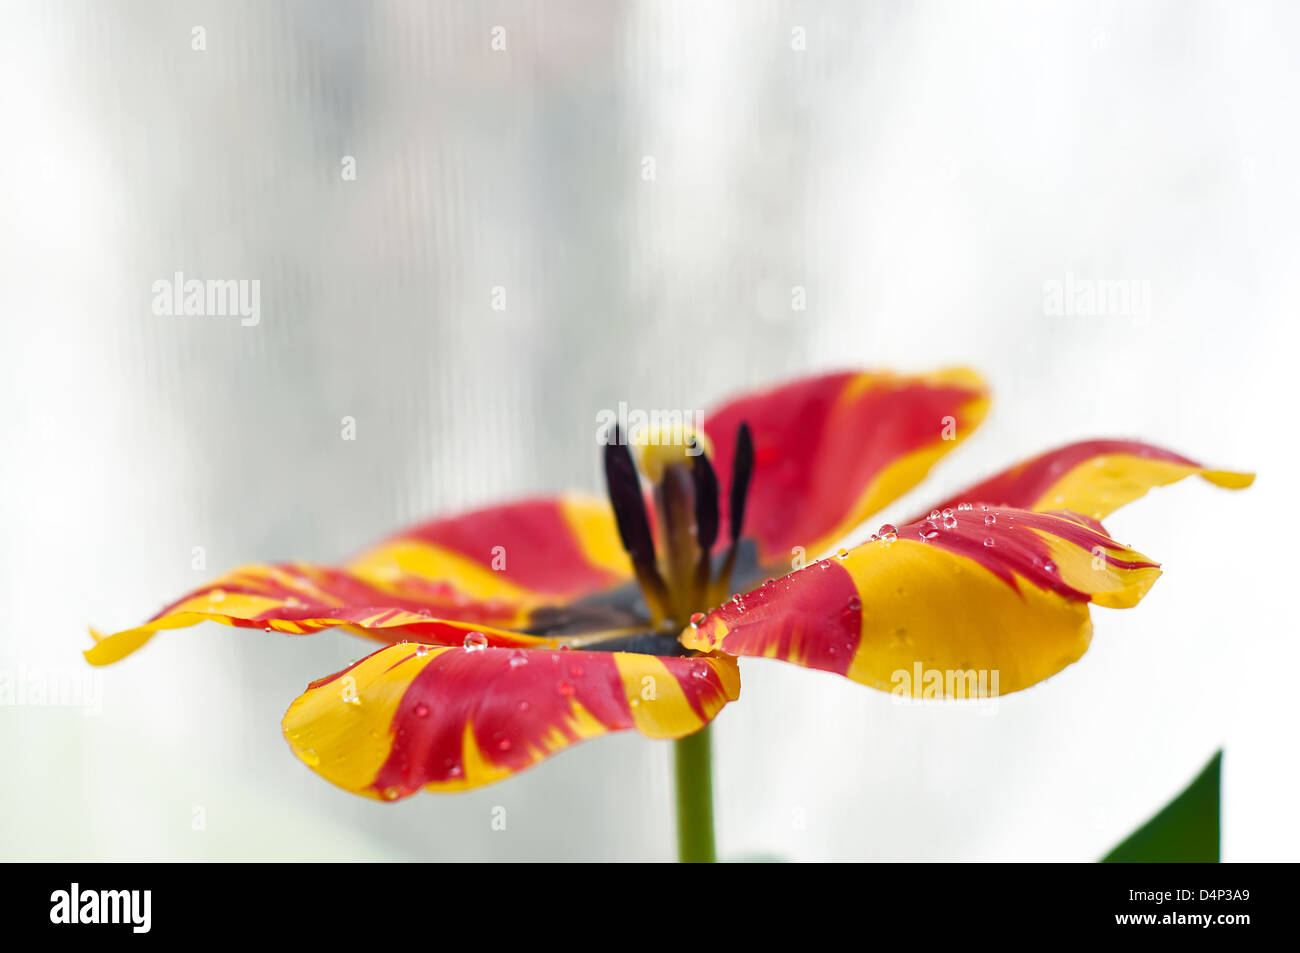 Tautropfen auf eine schöne rote und gelbe Tulpe mit vollständig geöffneten Blüten Nahaufnahme Stockfoto